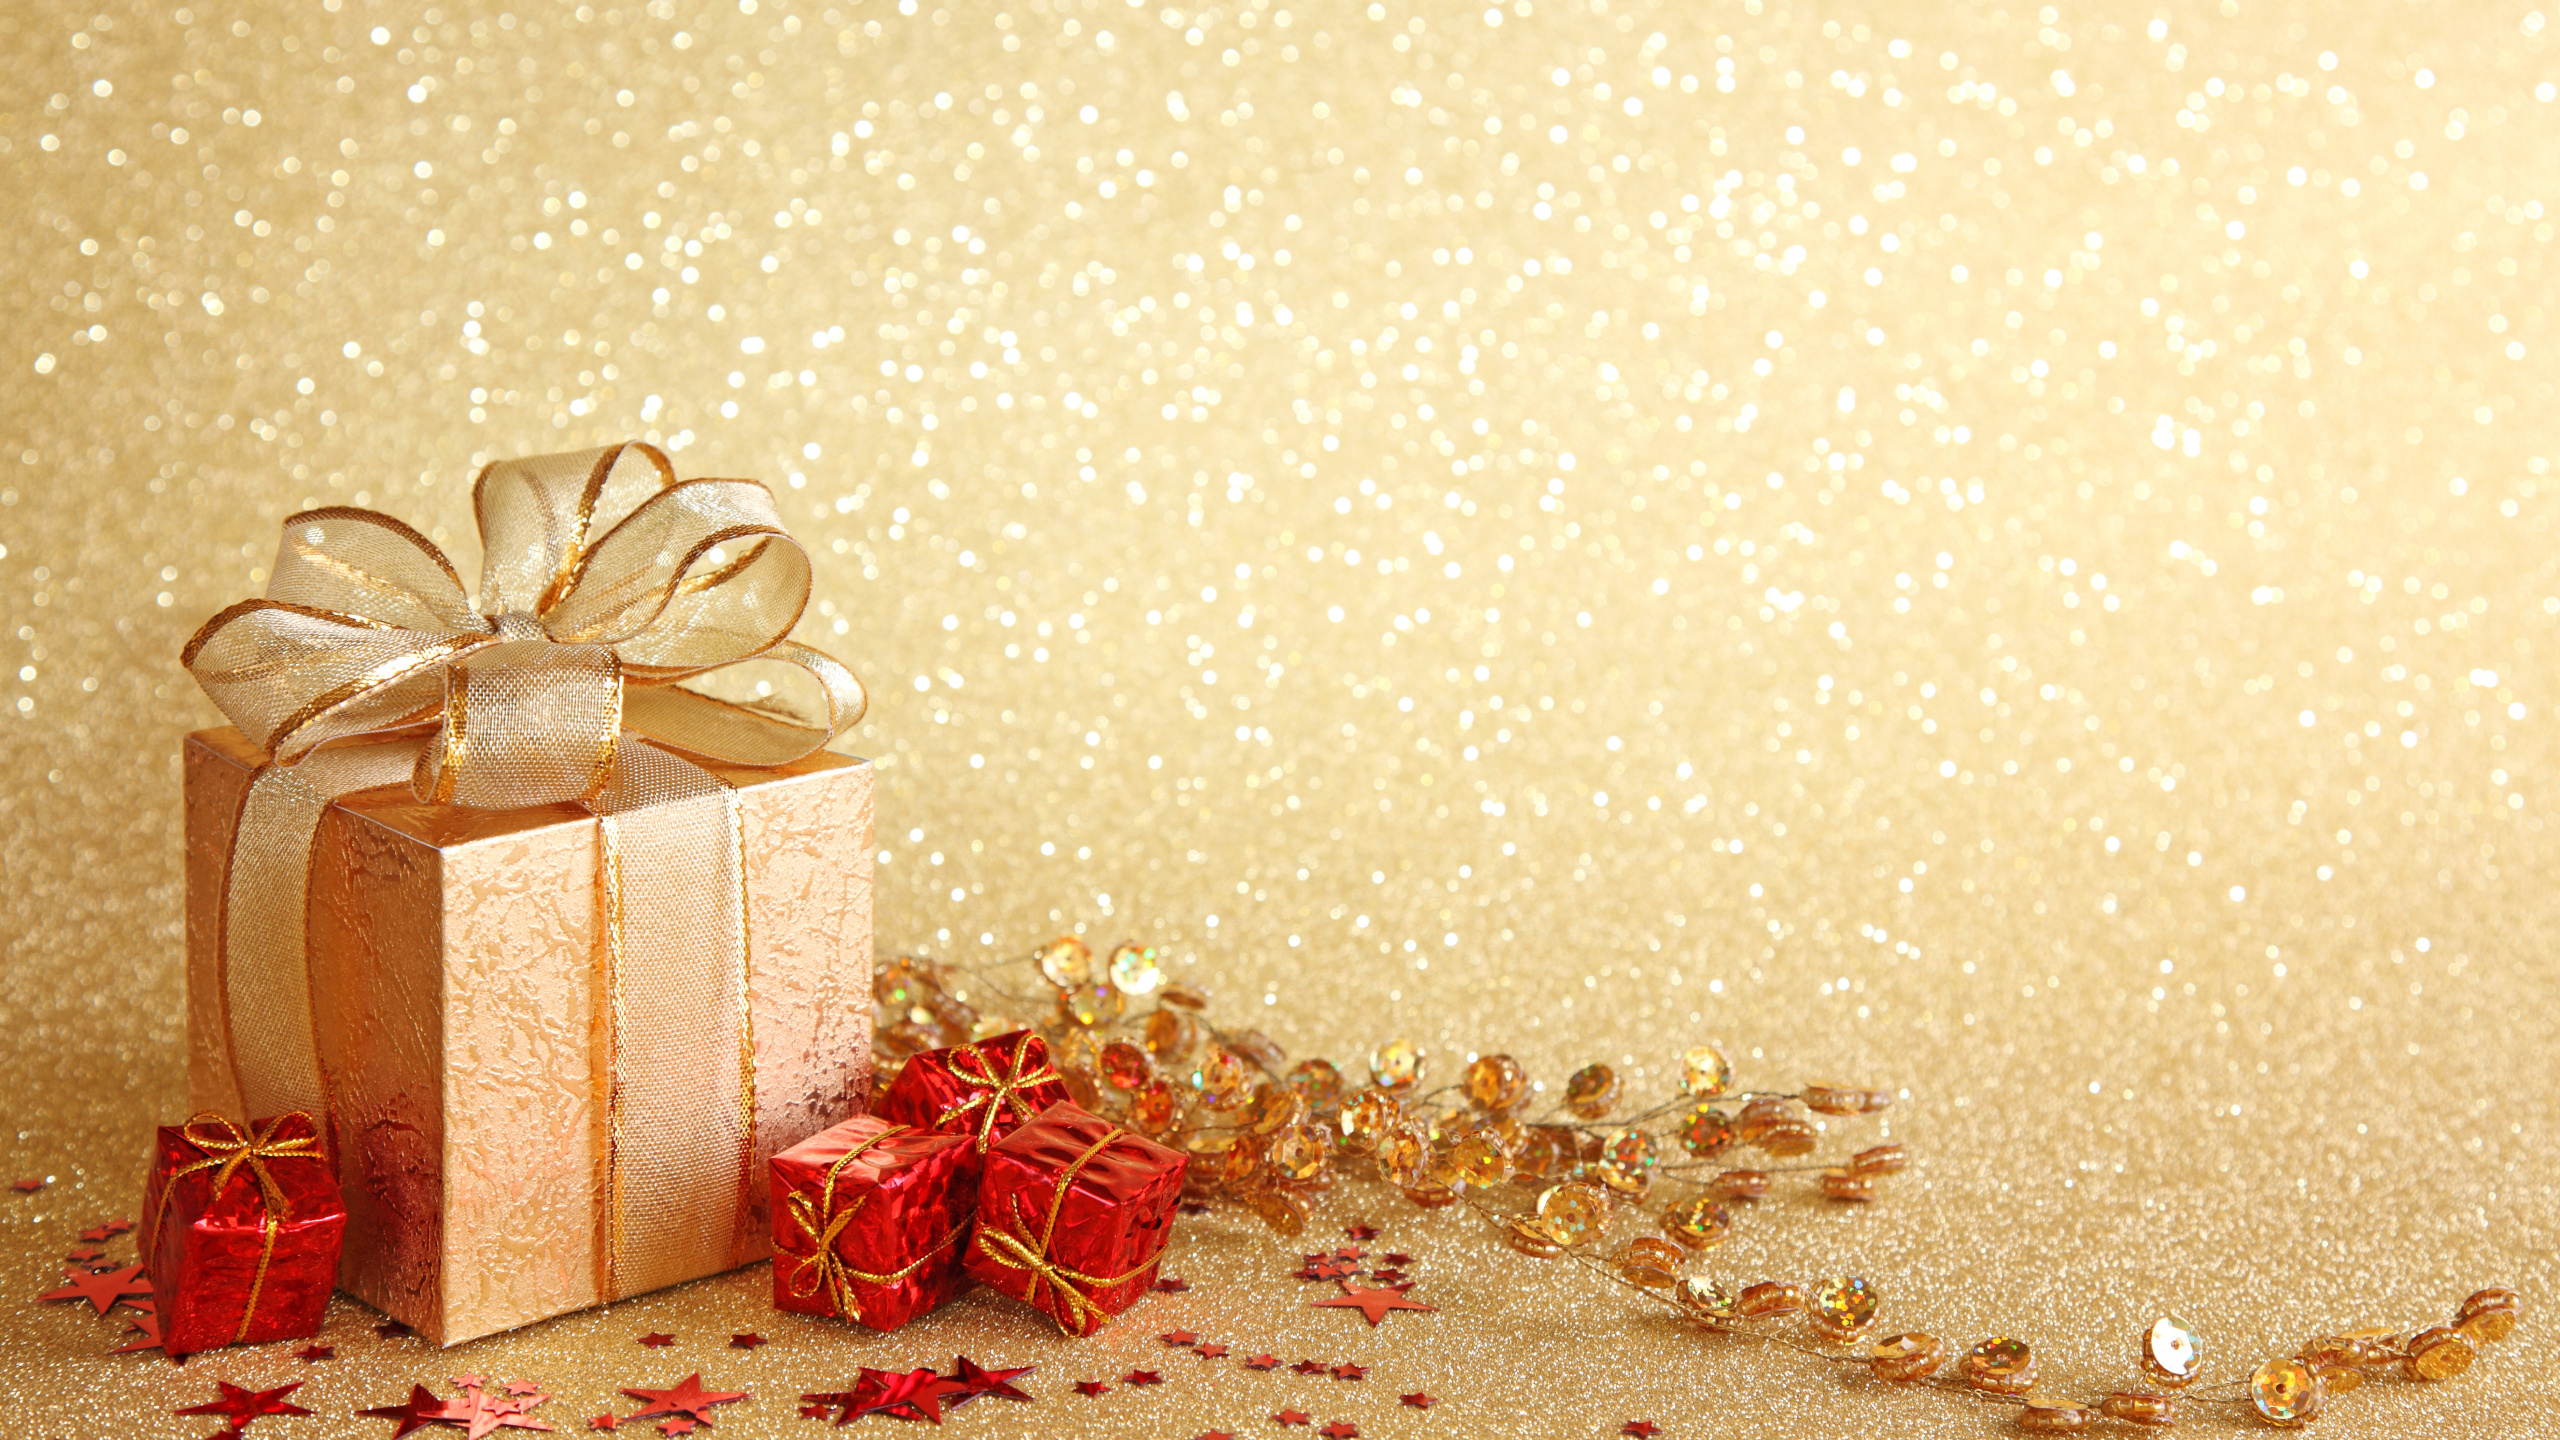 新的一年, 圣诞节那天, 礼品包装, 丝带, 圣诞装饰 壁纸 2560x1440 允许